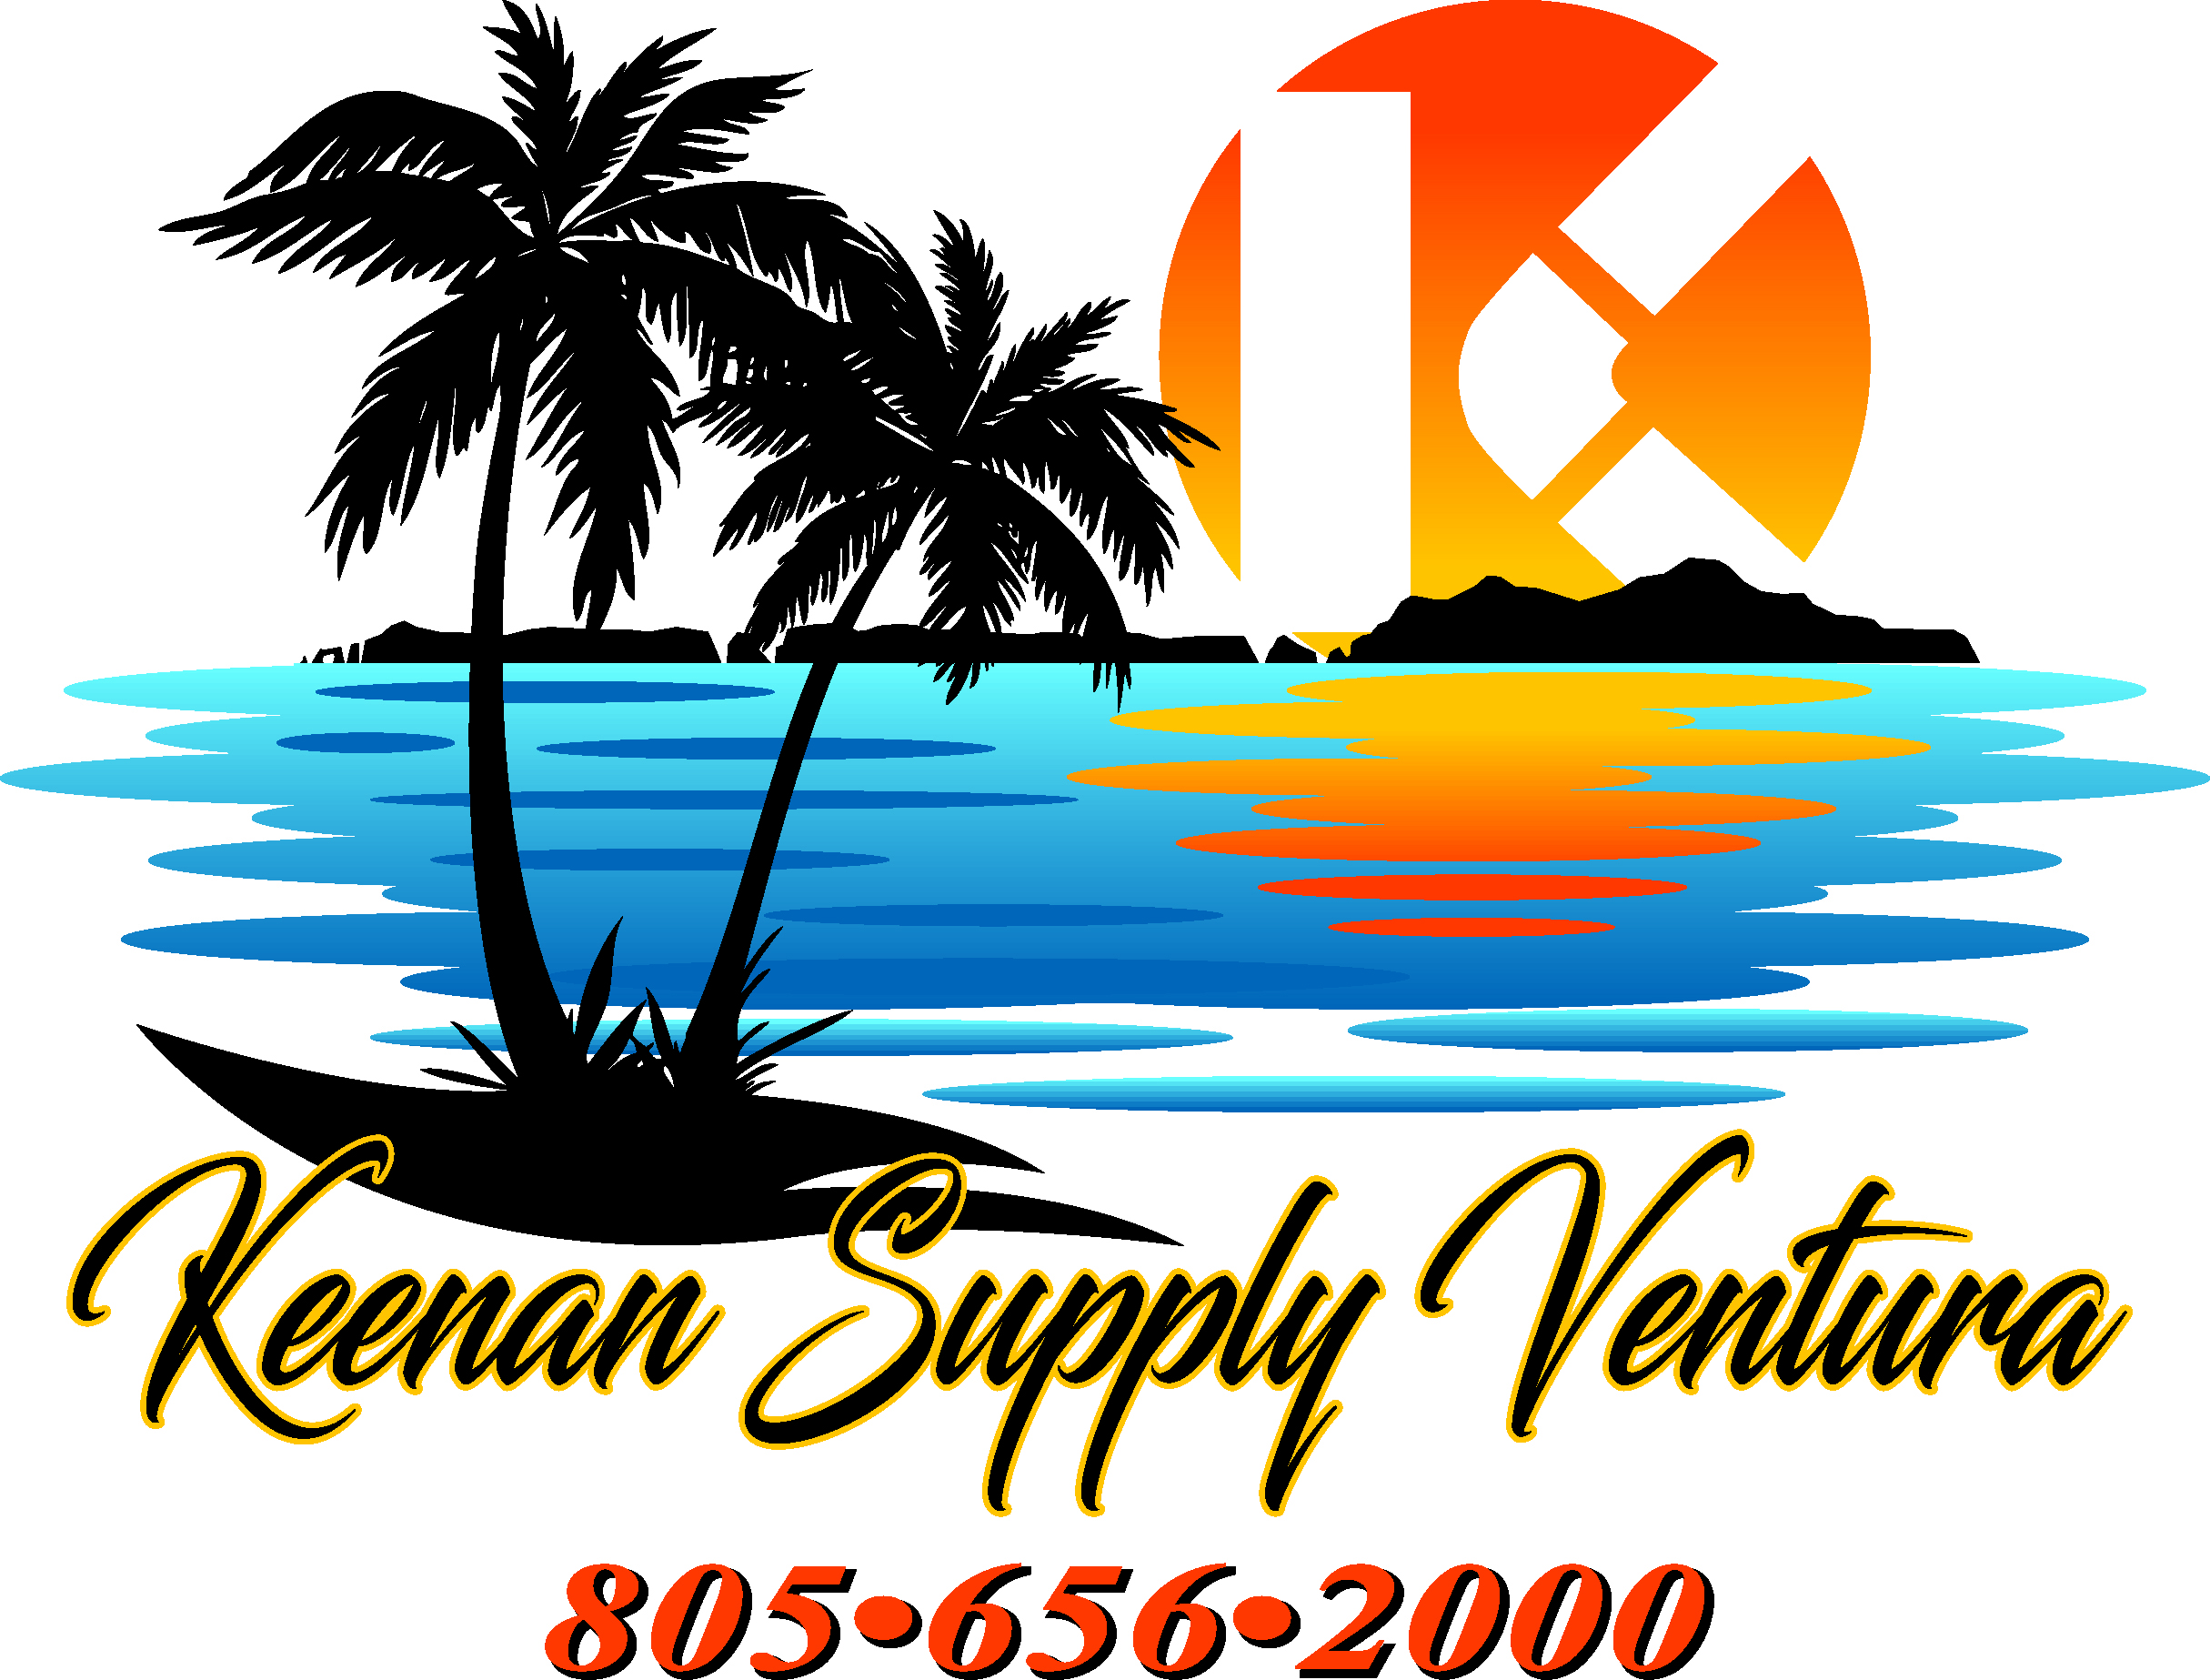 Keenan Supply Ventura